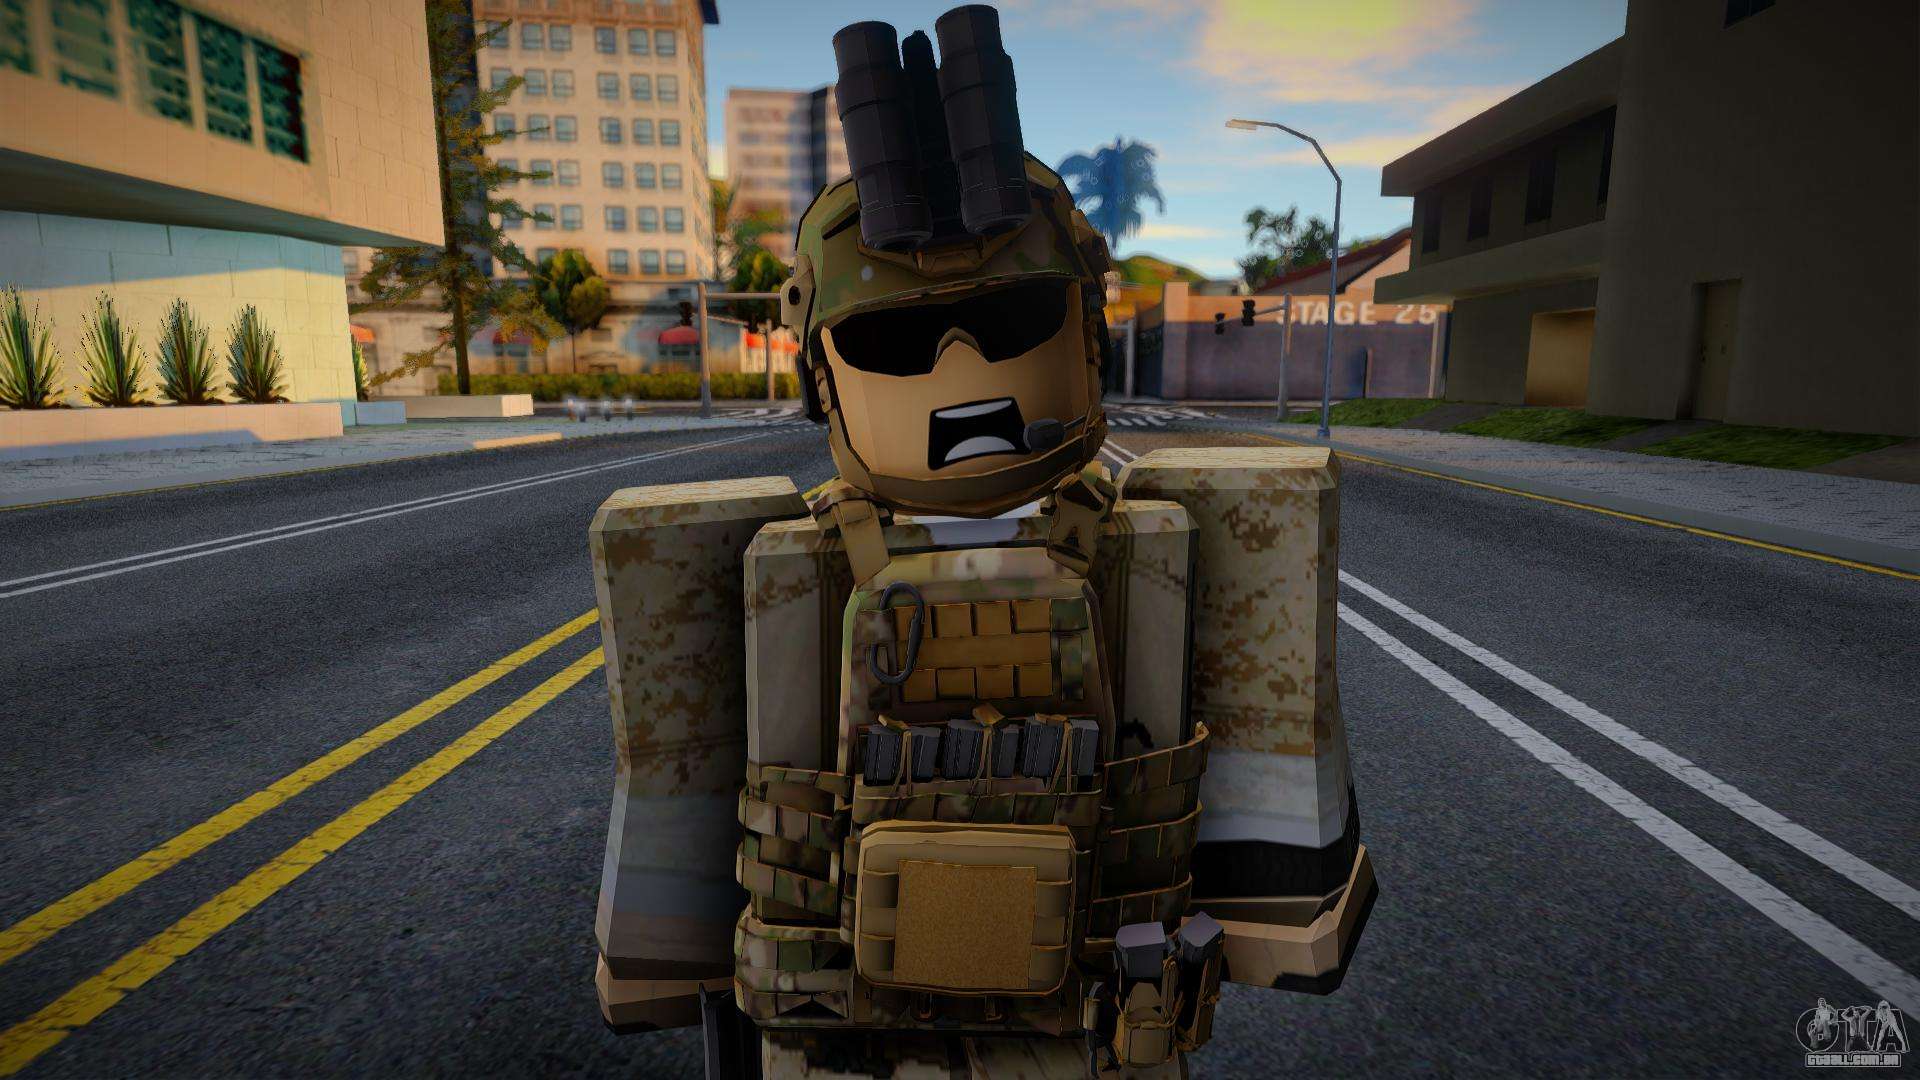 Roblox Skin (army) para GTA San Andreas